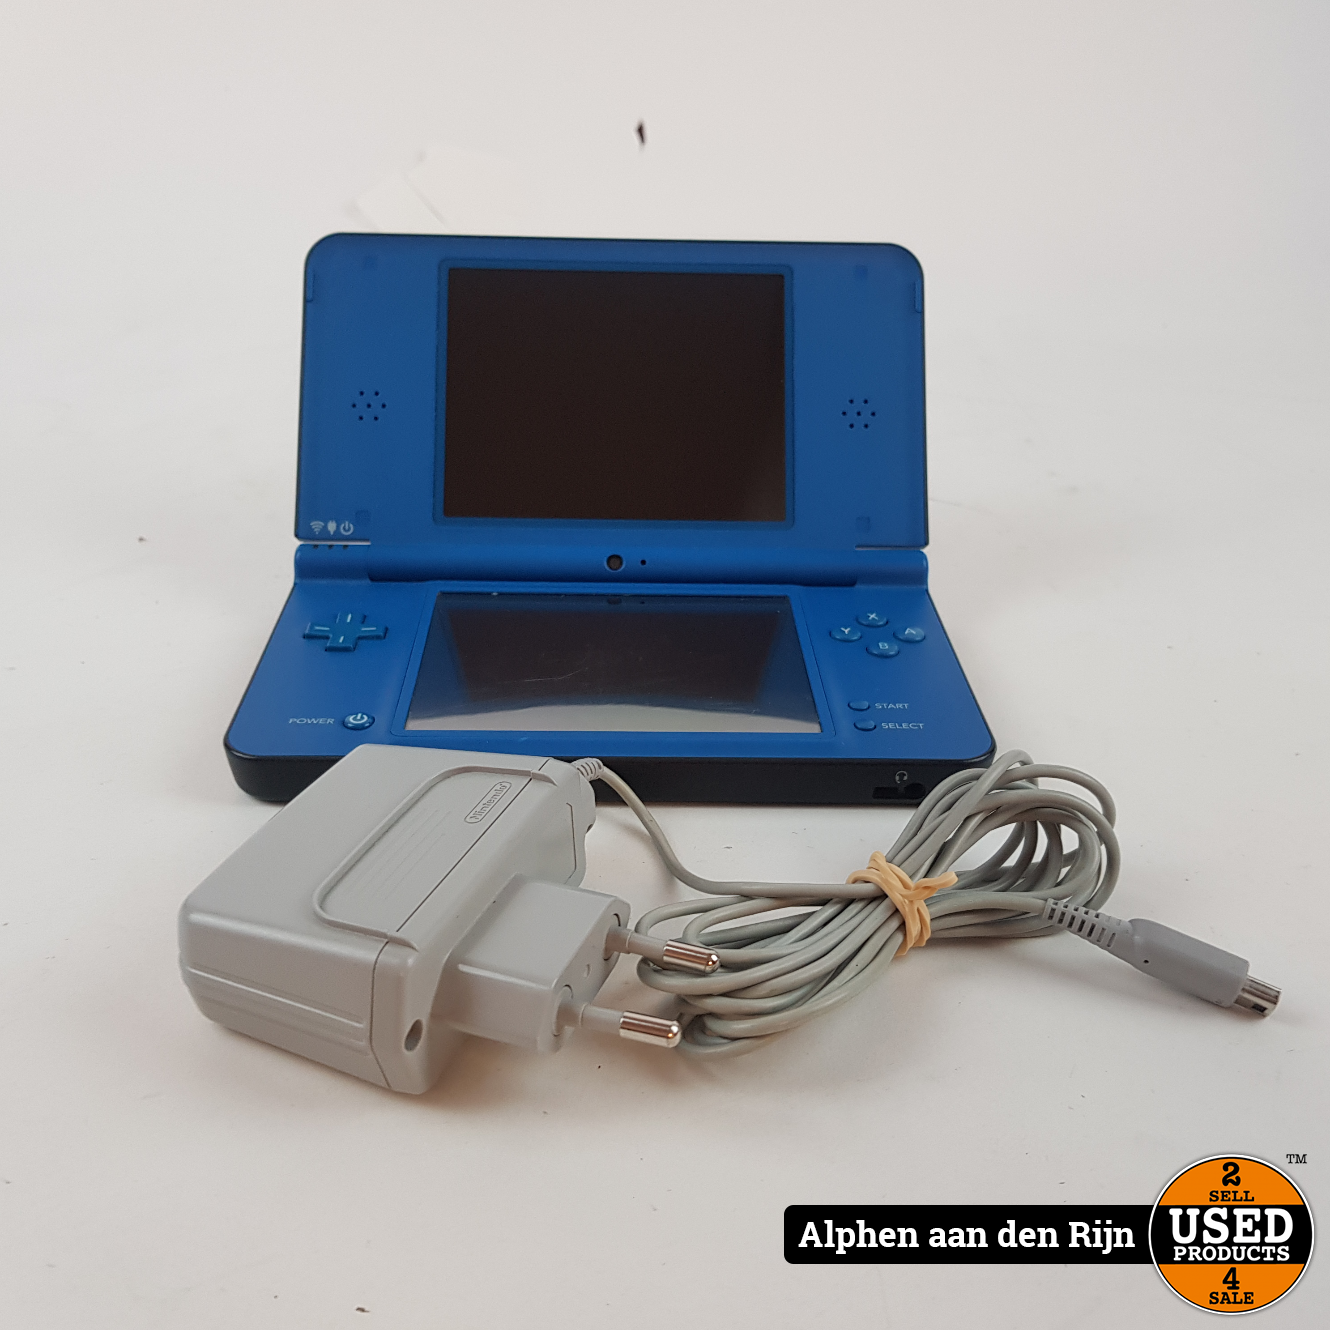 barsten Leerling Mordrin Nintendo DSi XL Blauw + lader - Used Products Alphen aan den Rijn